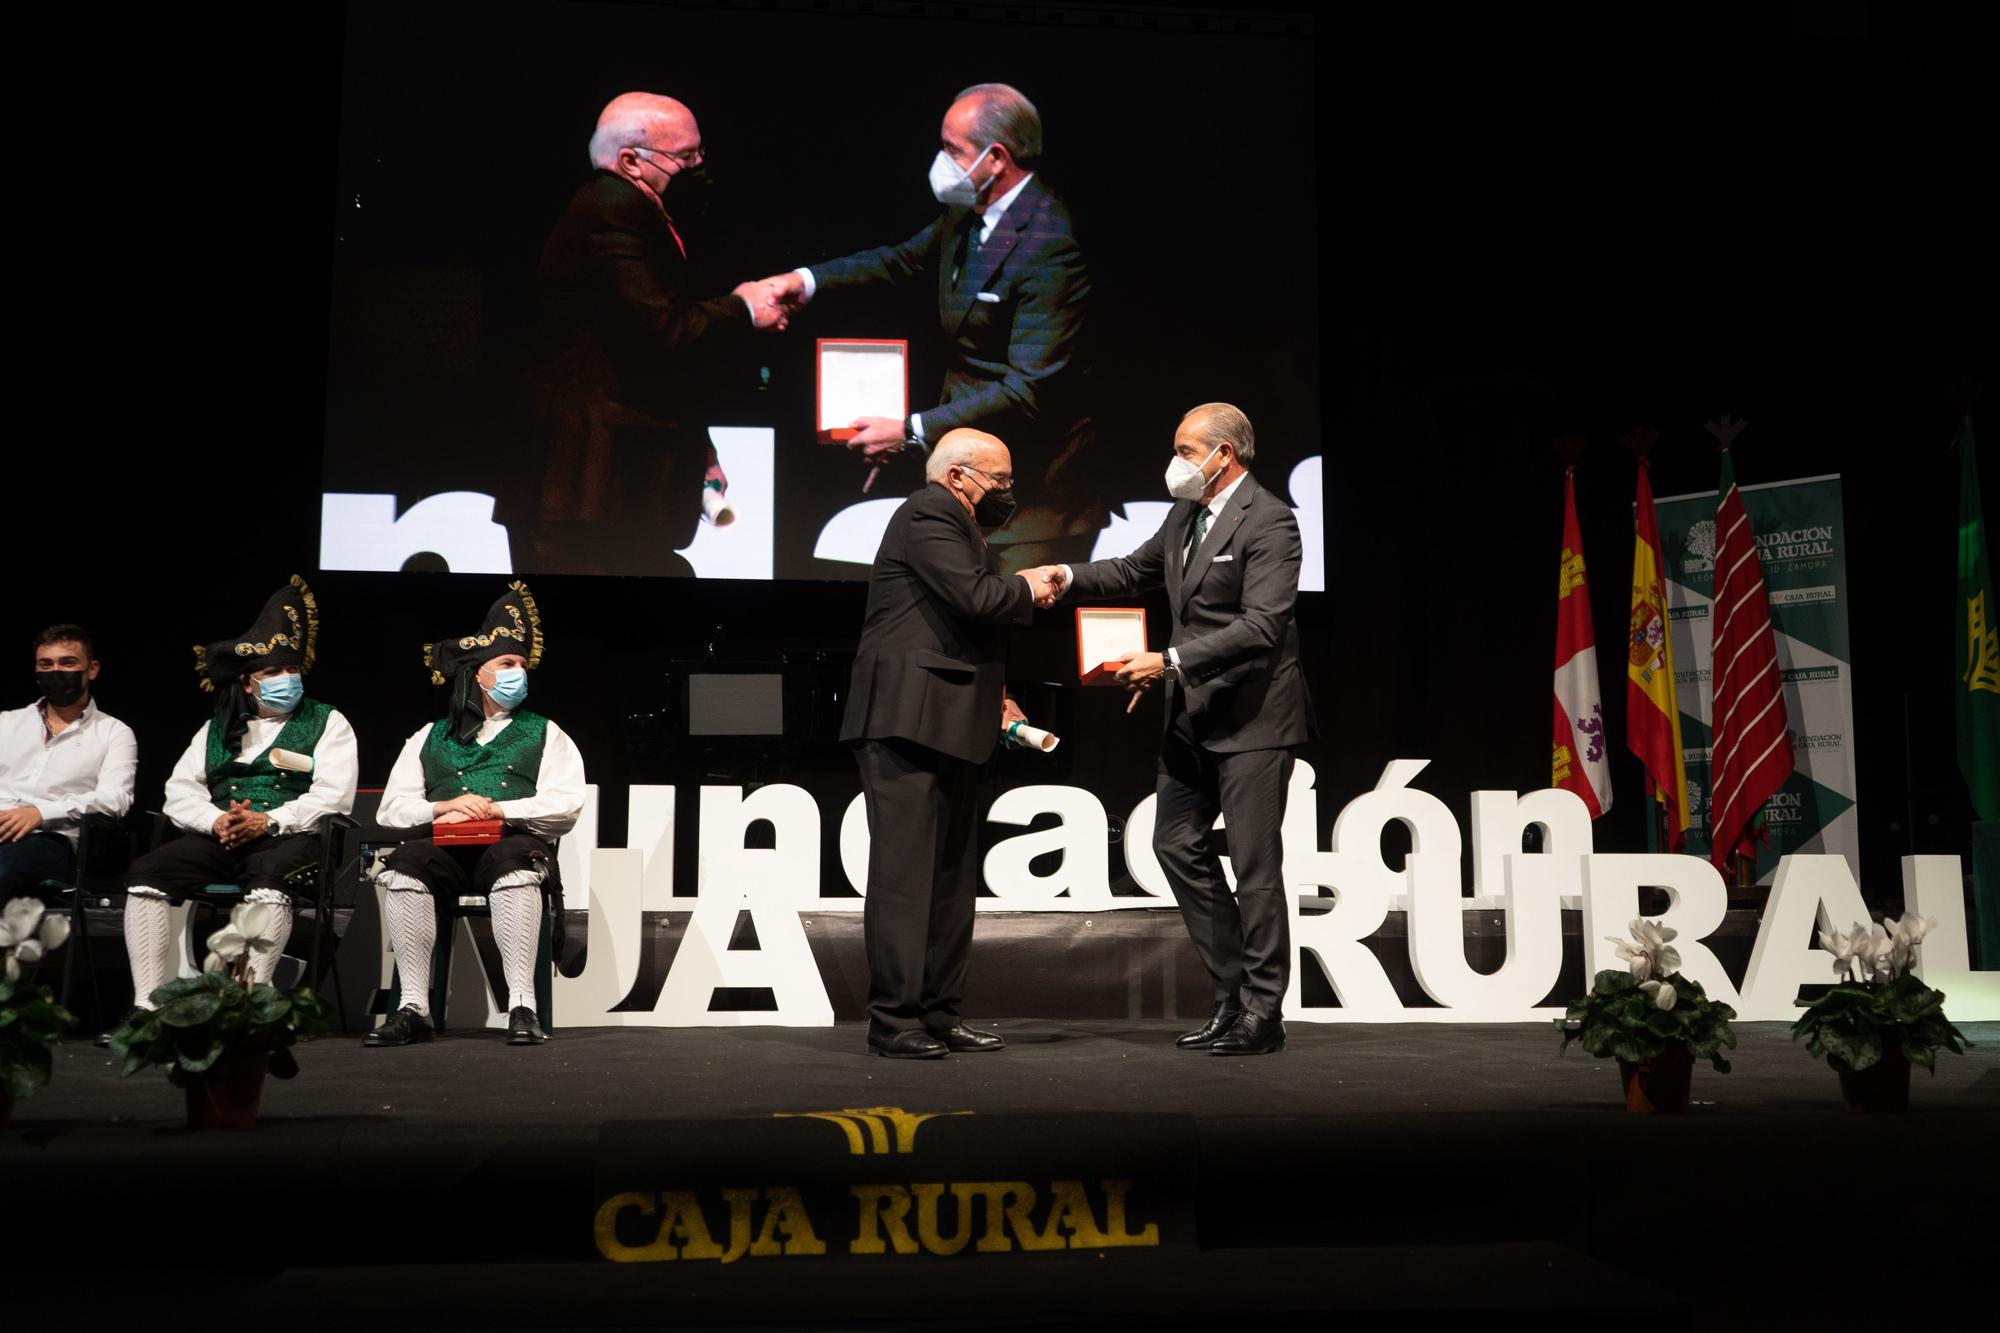 GALERÍA | Los premios de la Fundación Caja Rural, en imágenes